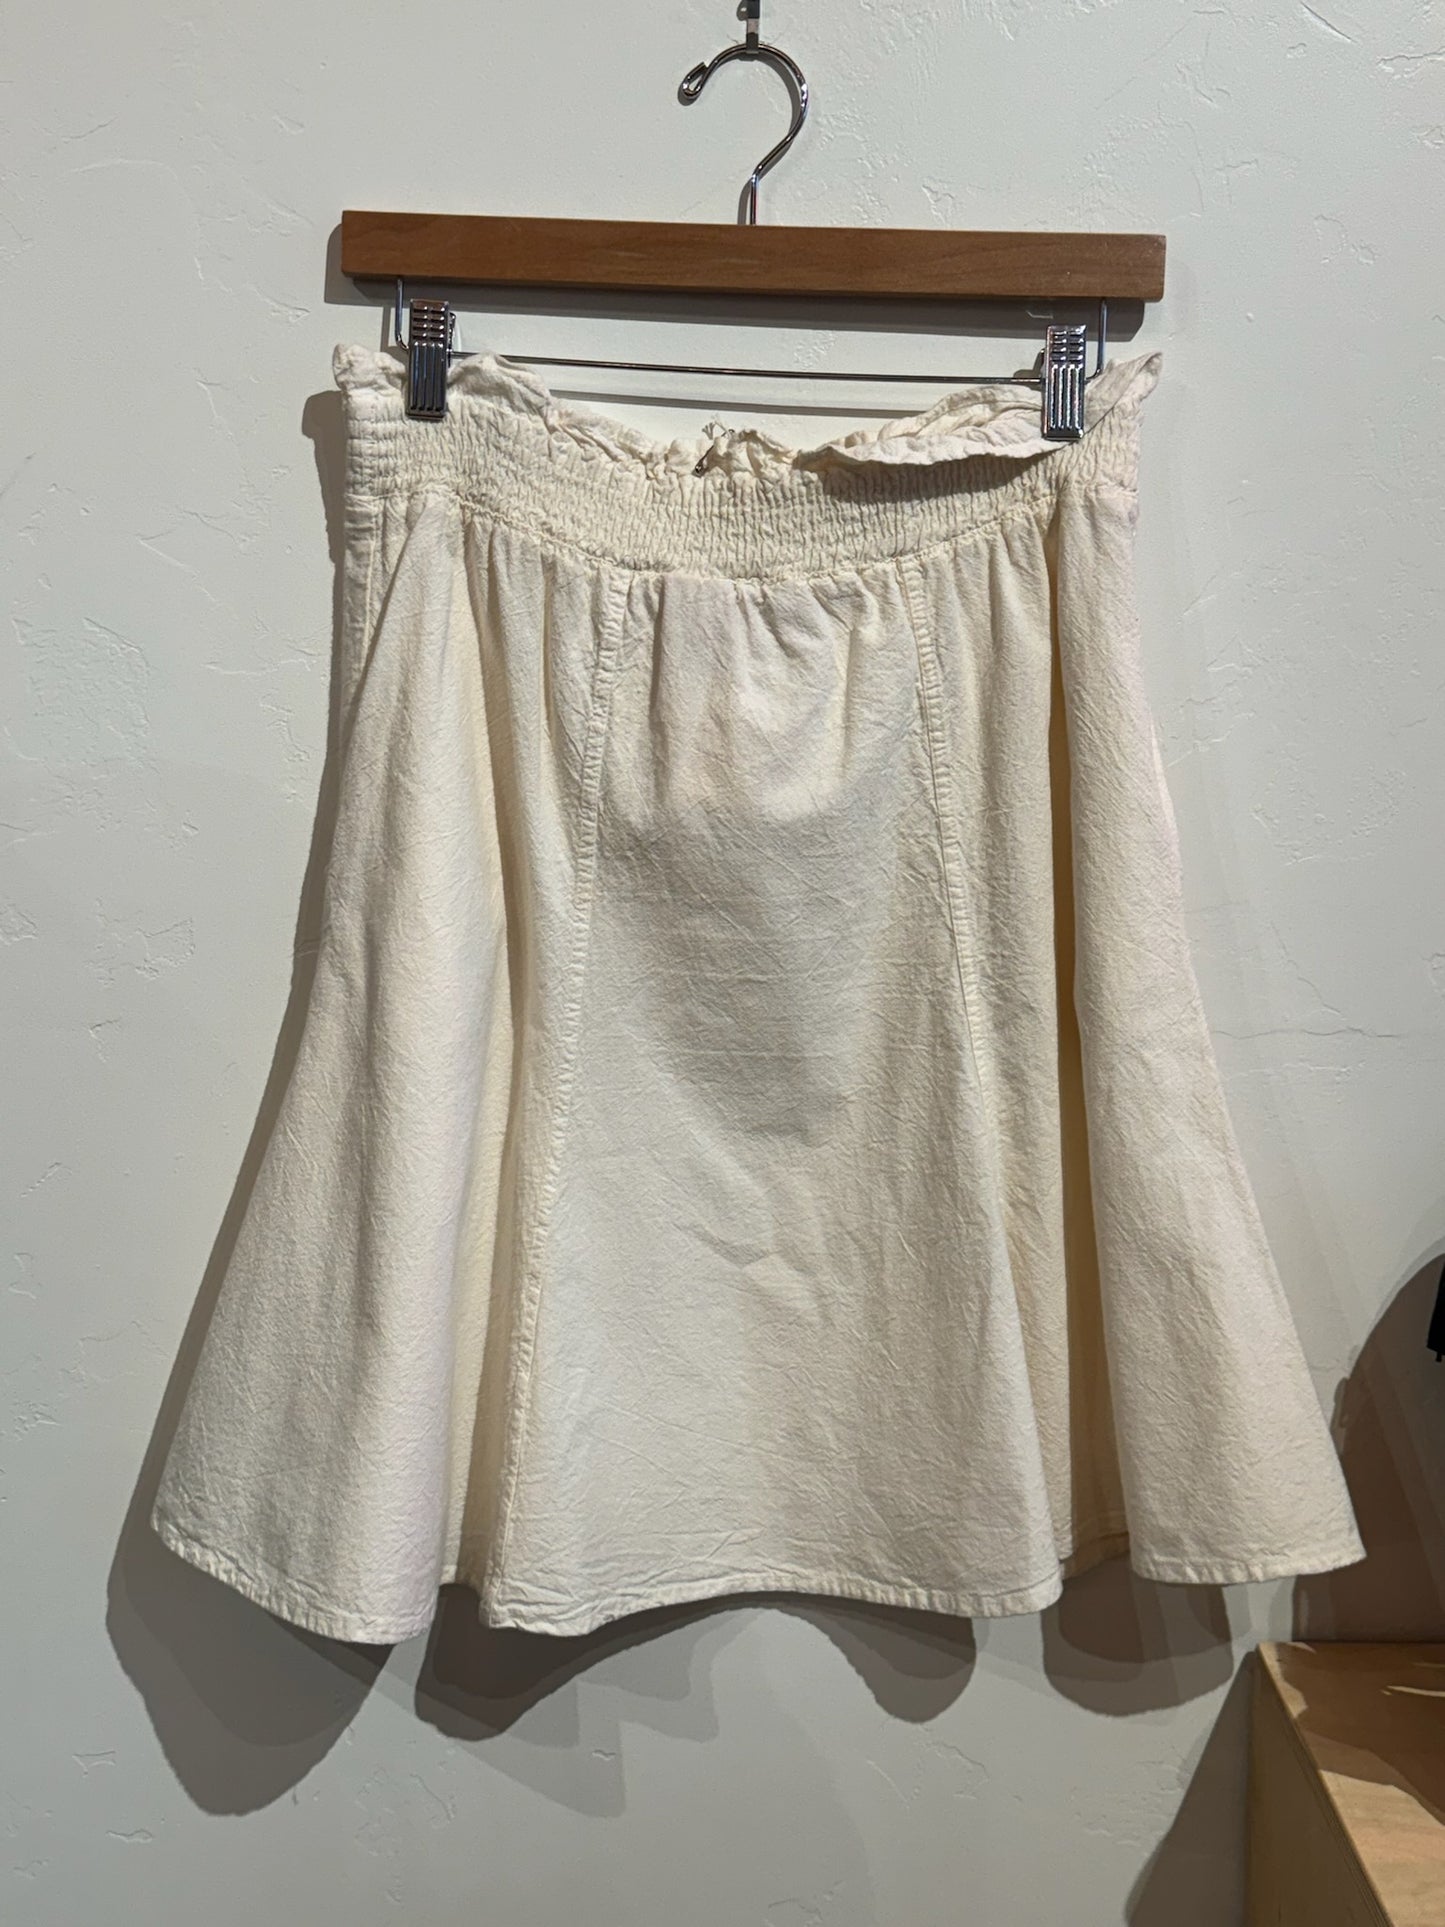 1980s Justin Allen Cotton Skirt - 32"